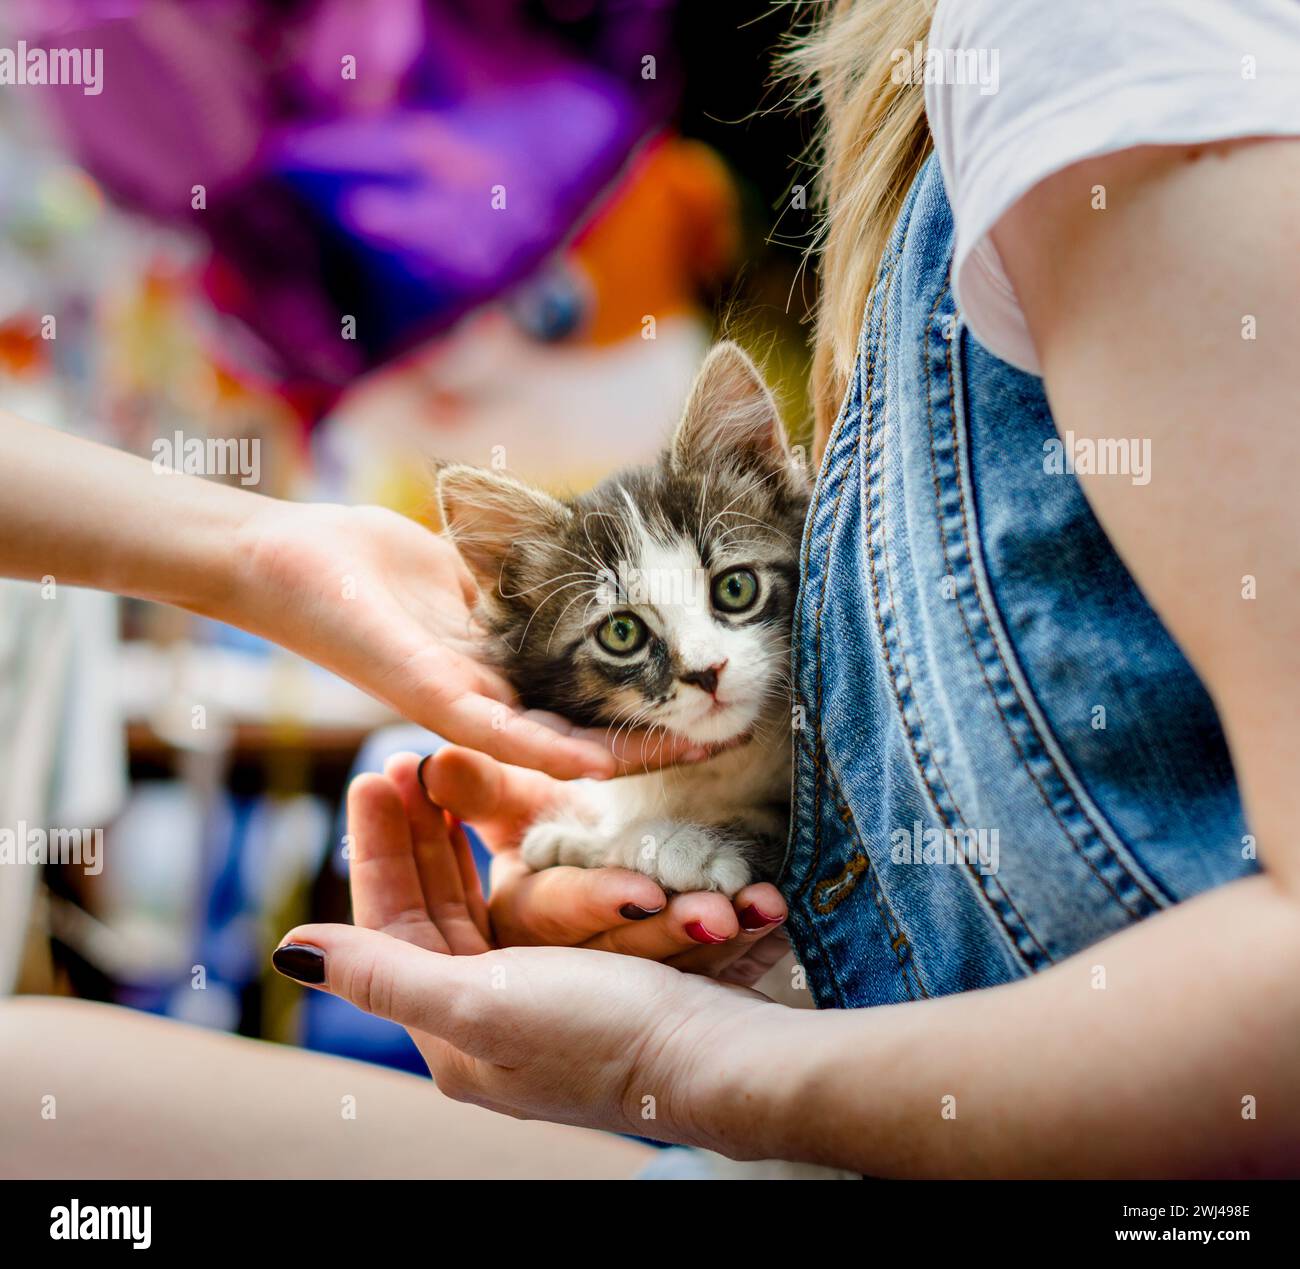 Prendersi cura degli animali domestici le mani dei bambini accarezzano un piccolo gattino a tavola Foto Stock